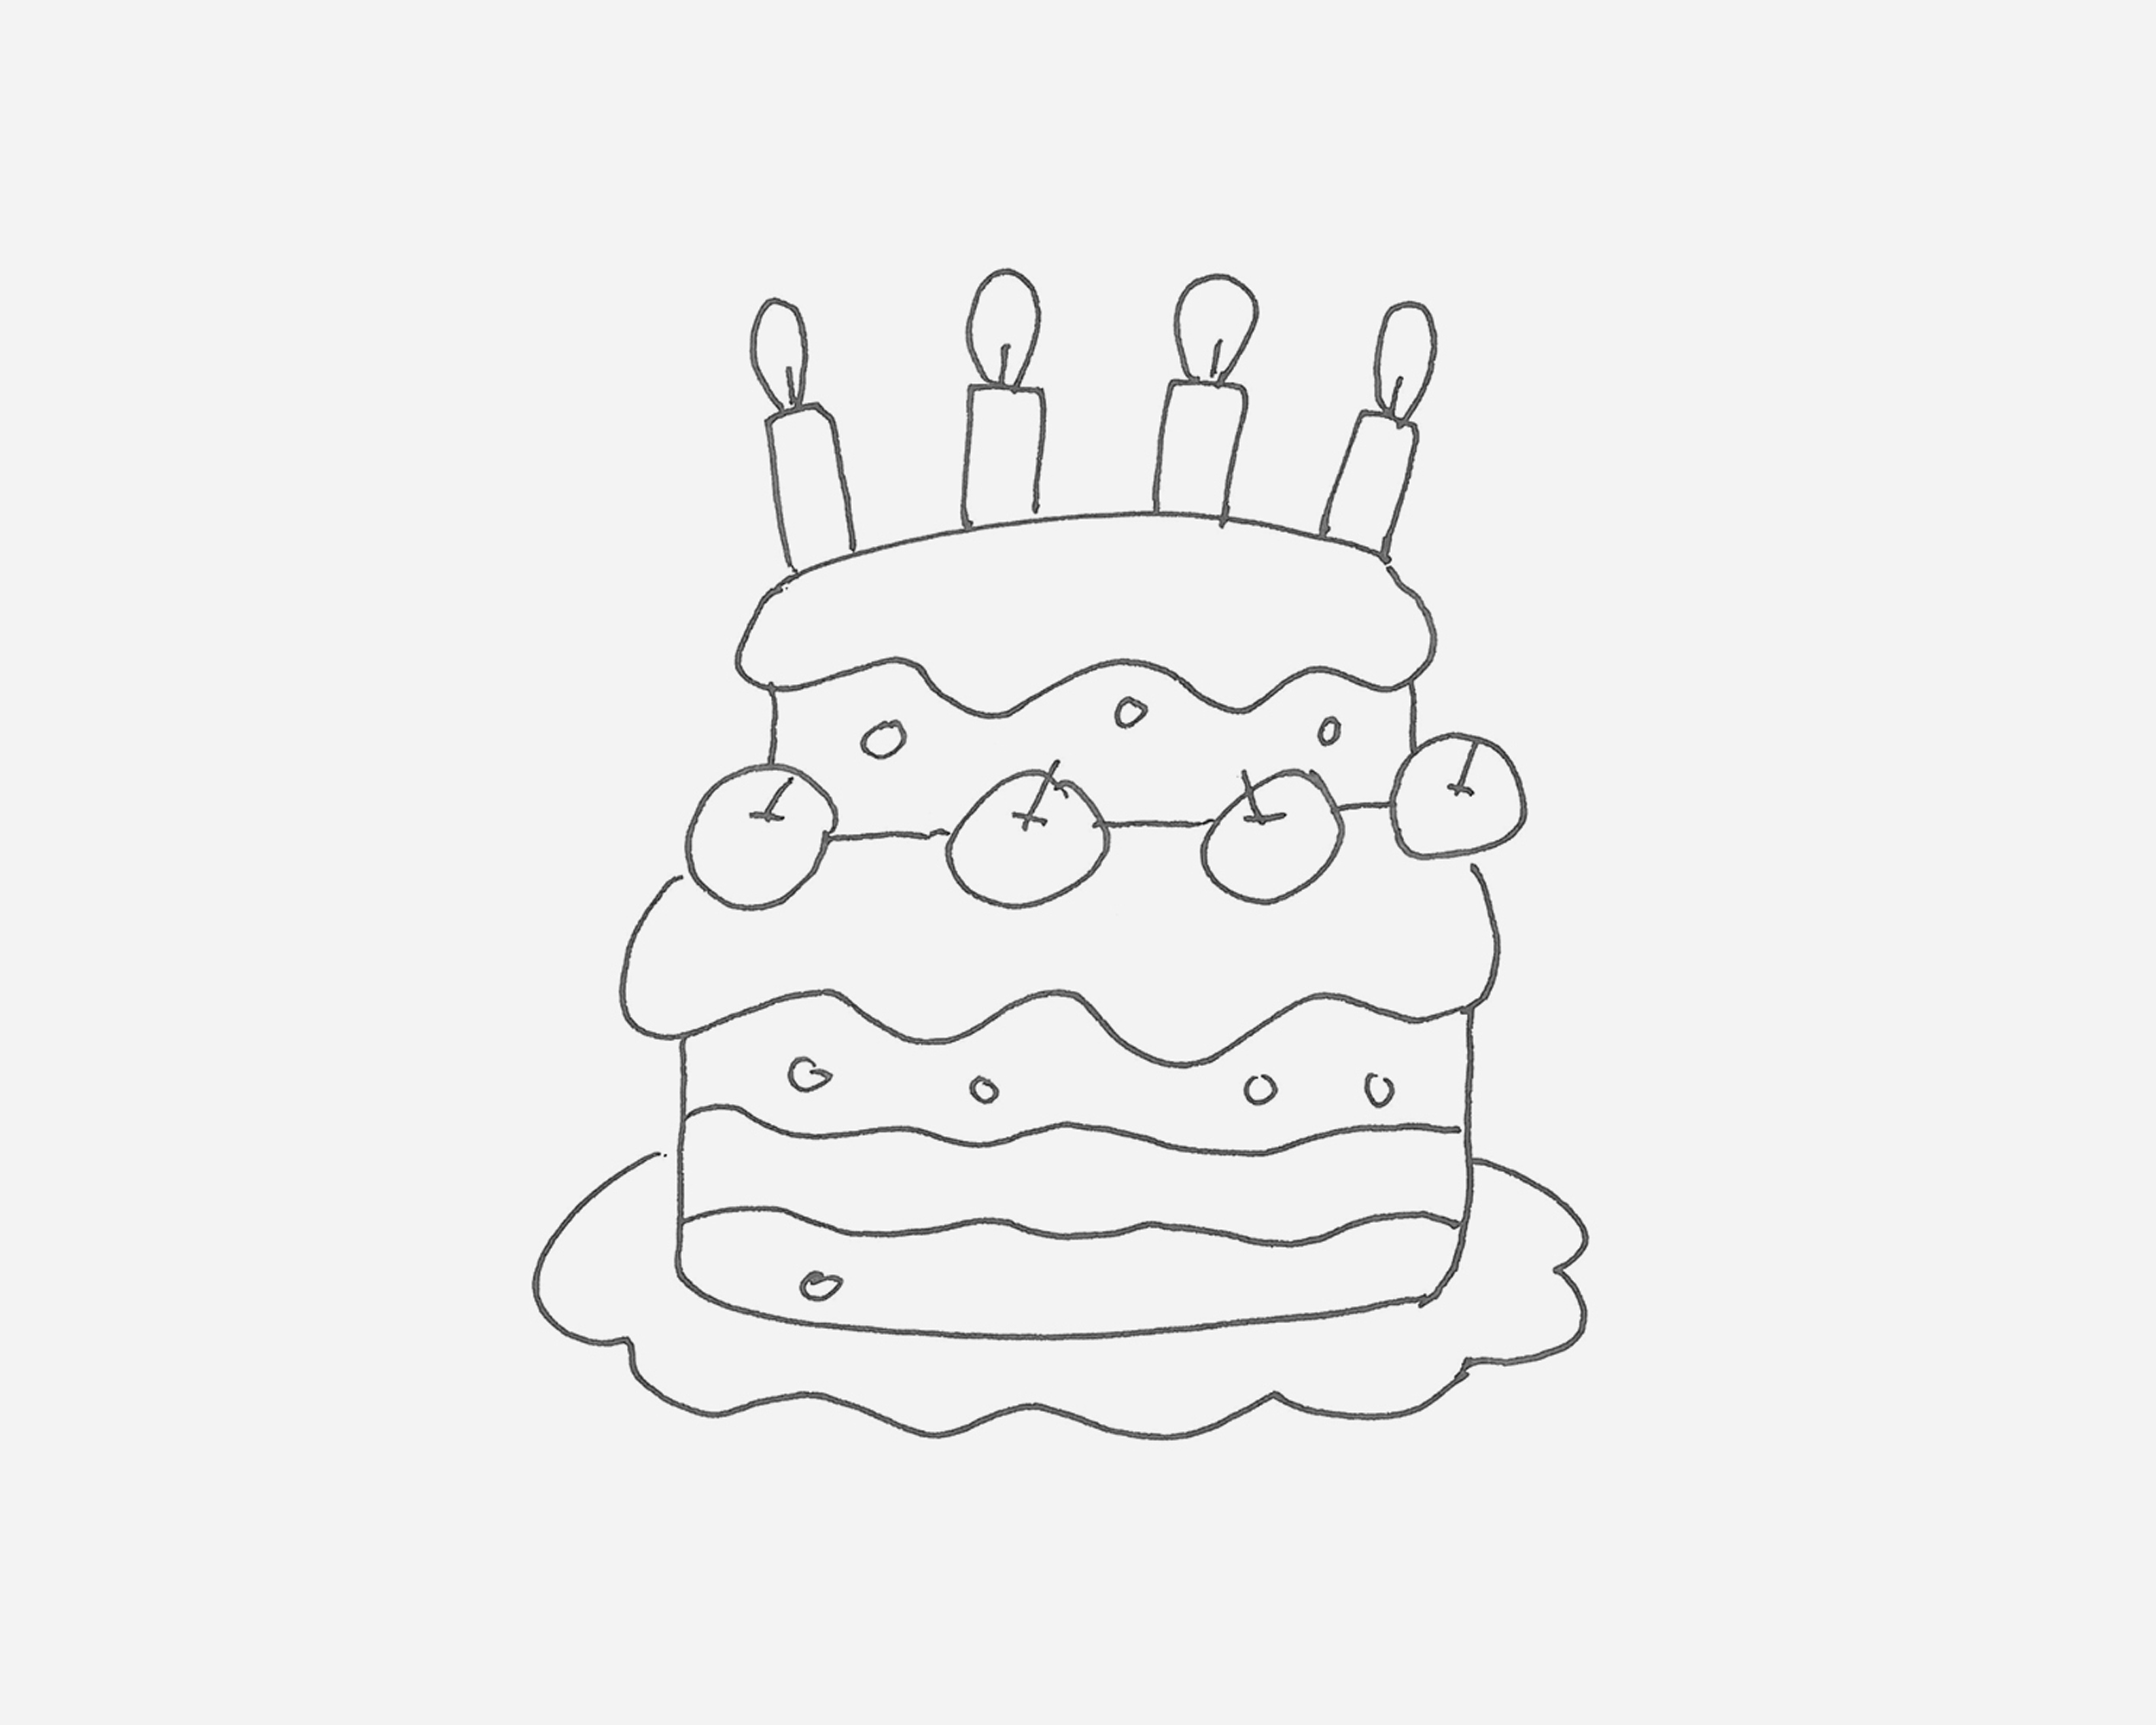 少儿创意美术教程之简笔画蛋糕的简单画法 肉丁儿童网